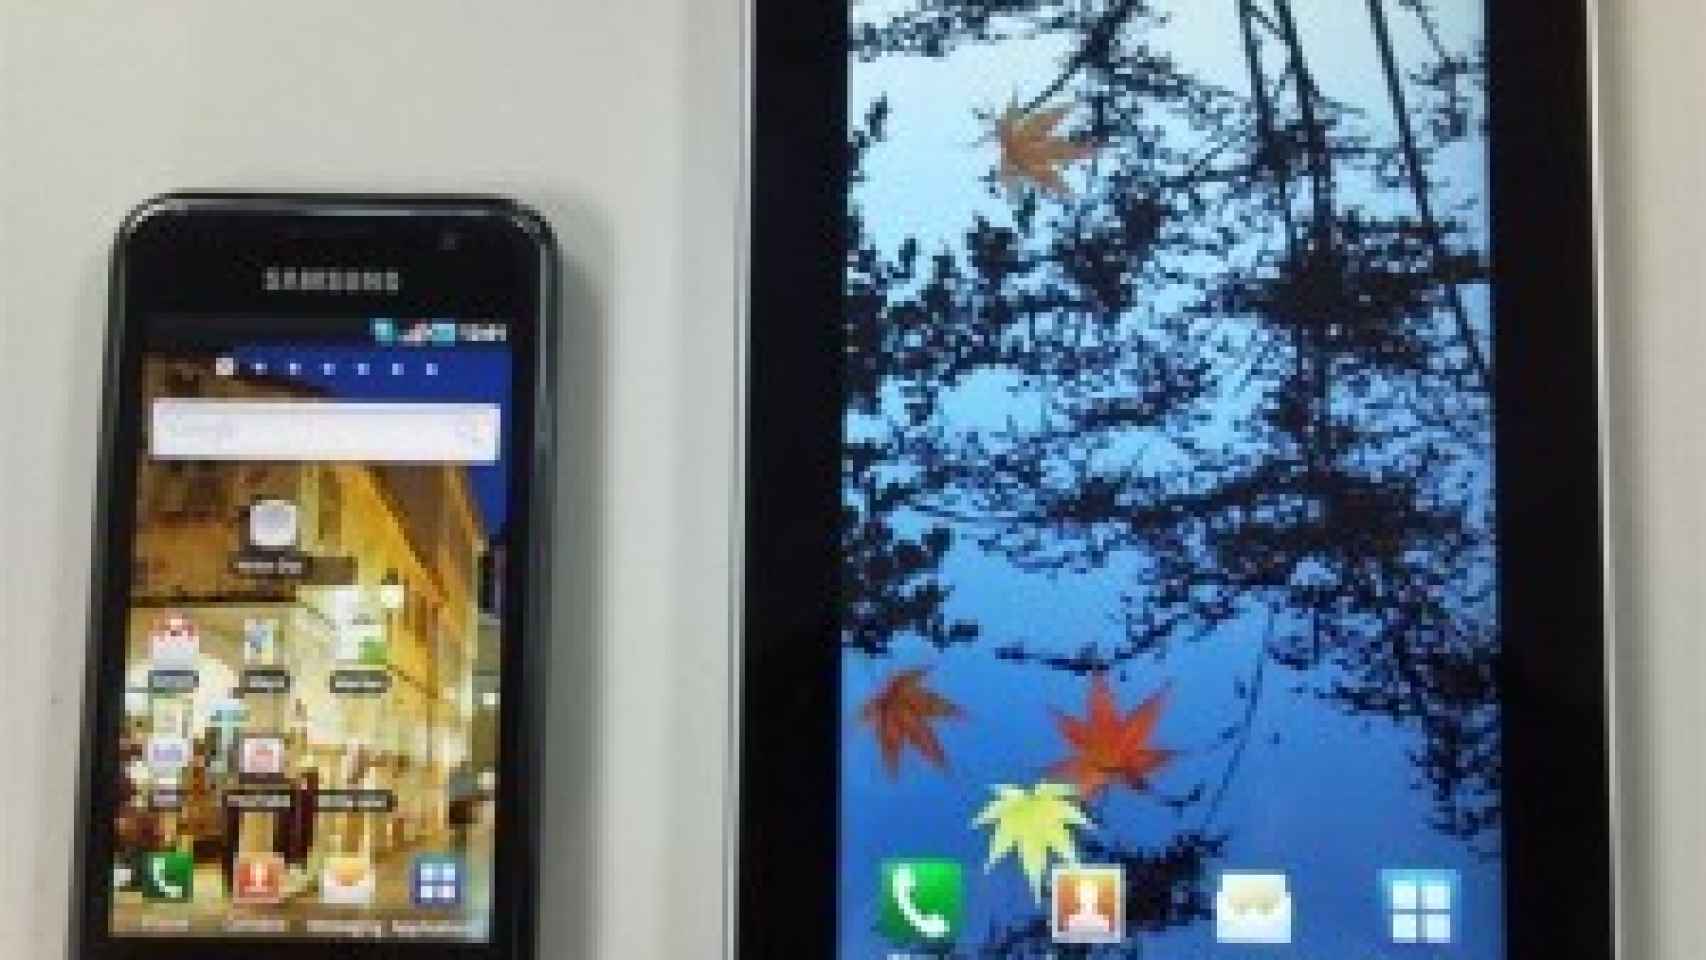 Samsung Galaxy Tab, la tablet que supera el Gigaherzio